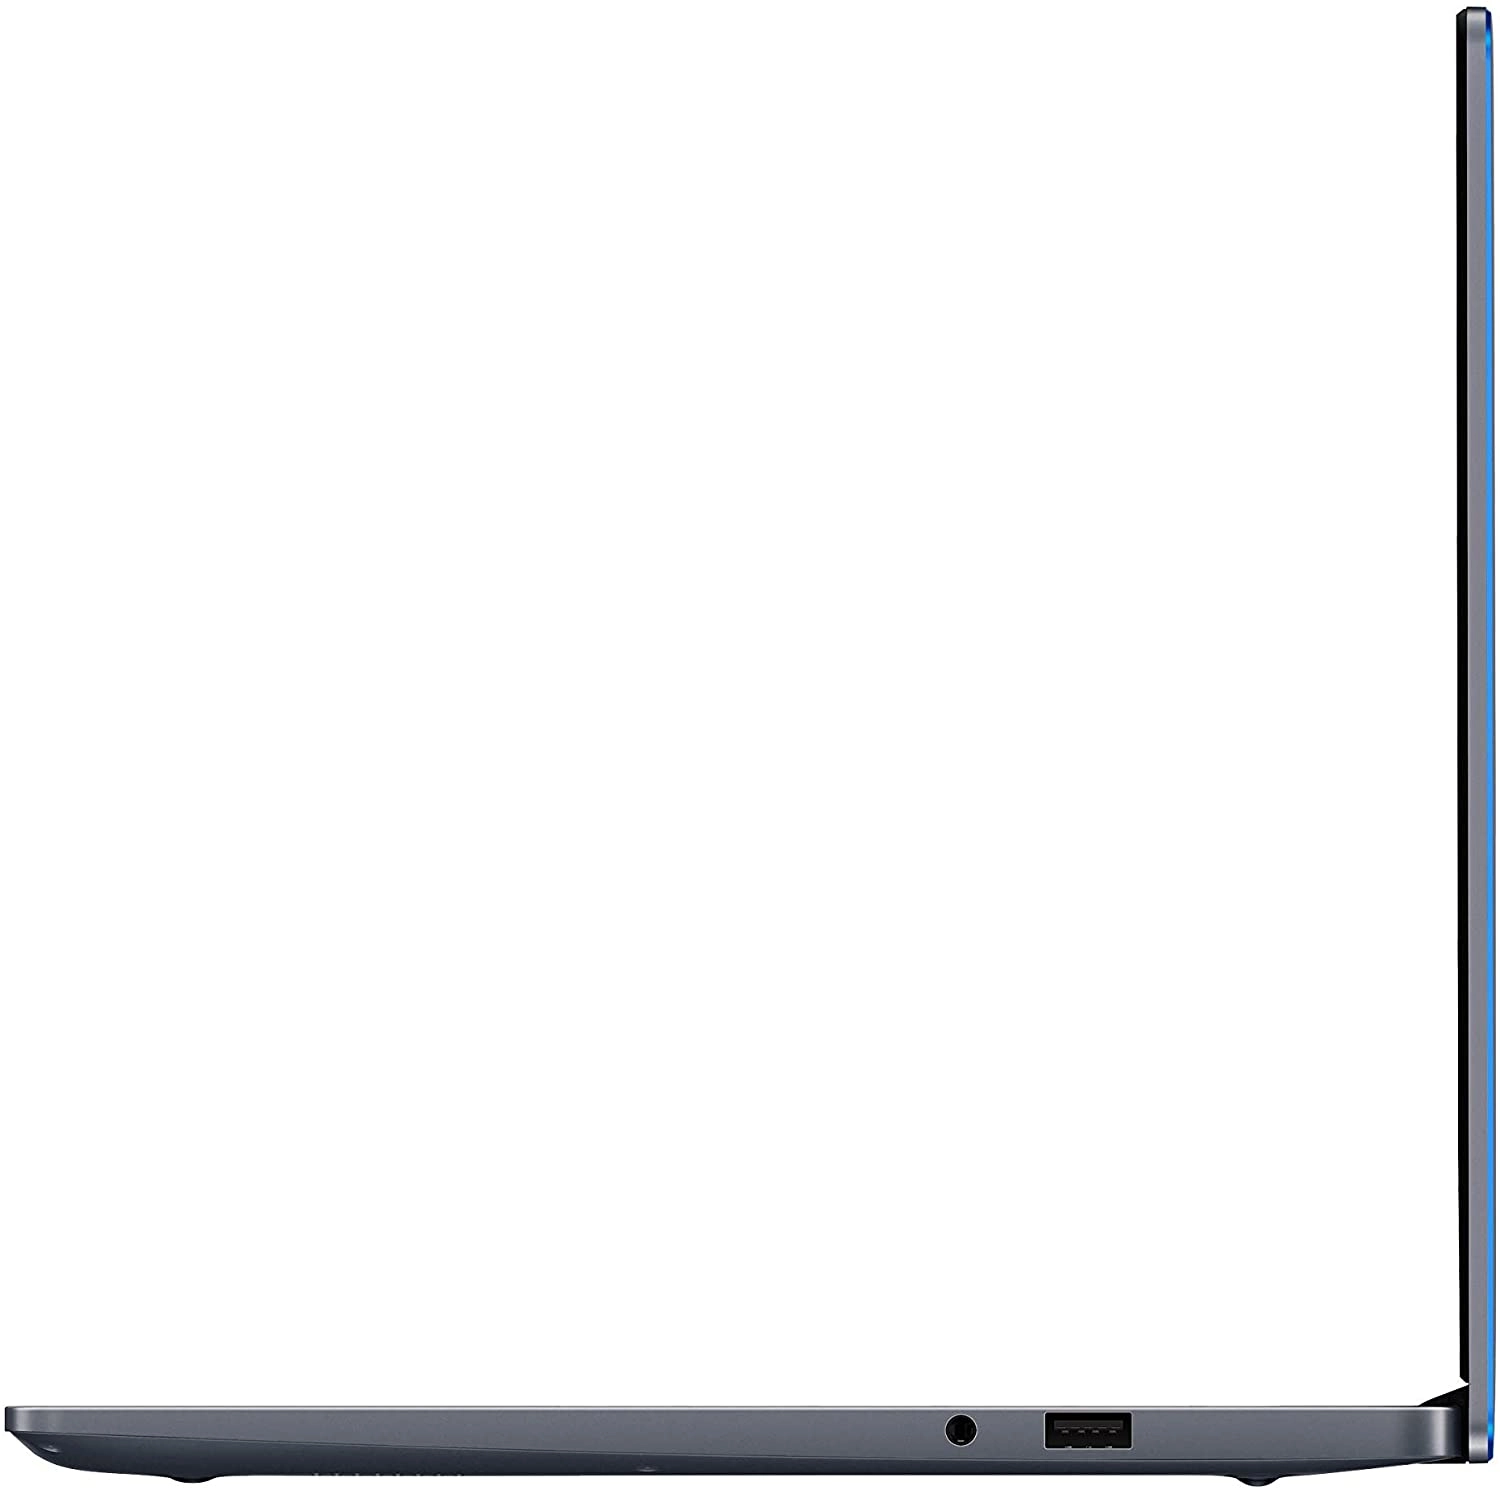 HONOR MagicBook 14 R5 3500U+8/256GB, Win 10 - Space Grey, Alemán diseño del teclado laptop image